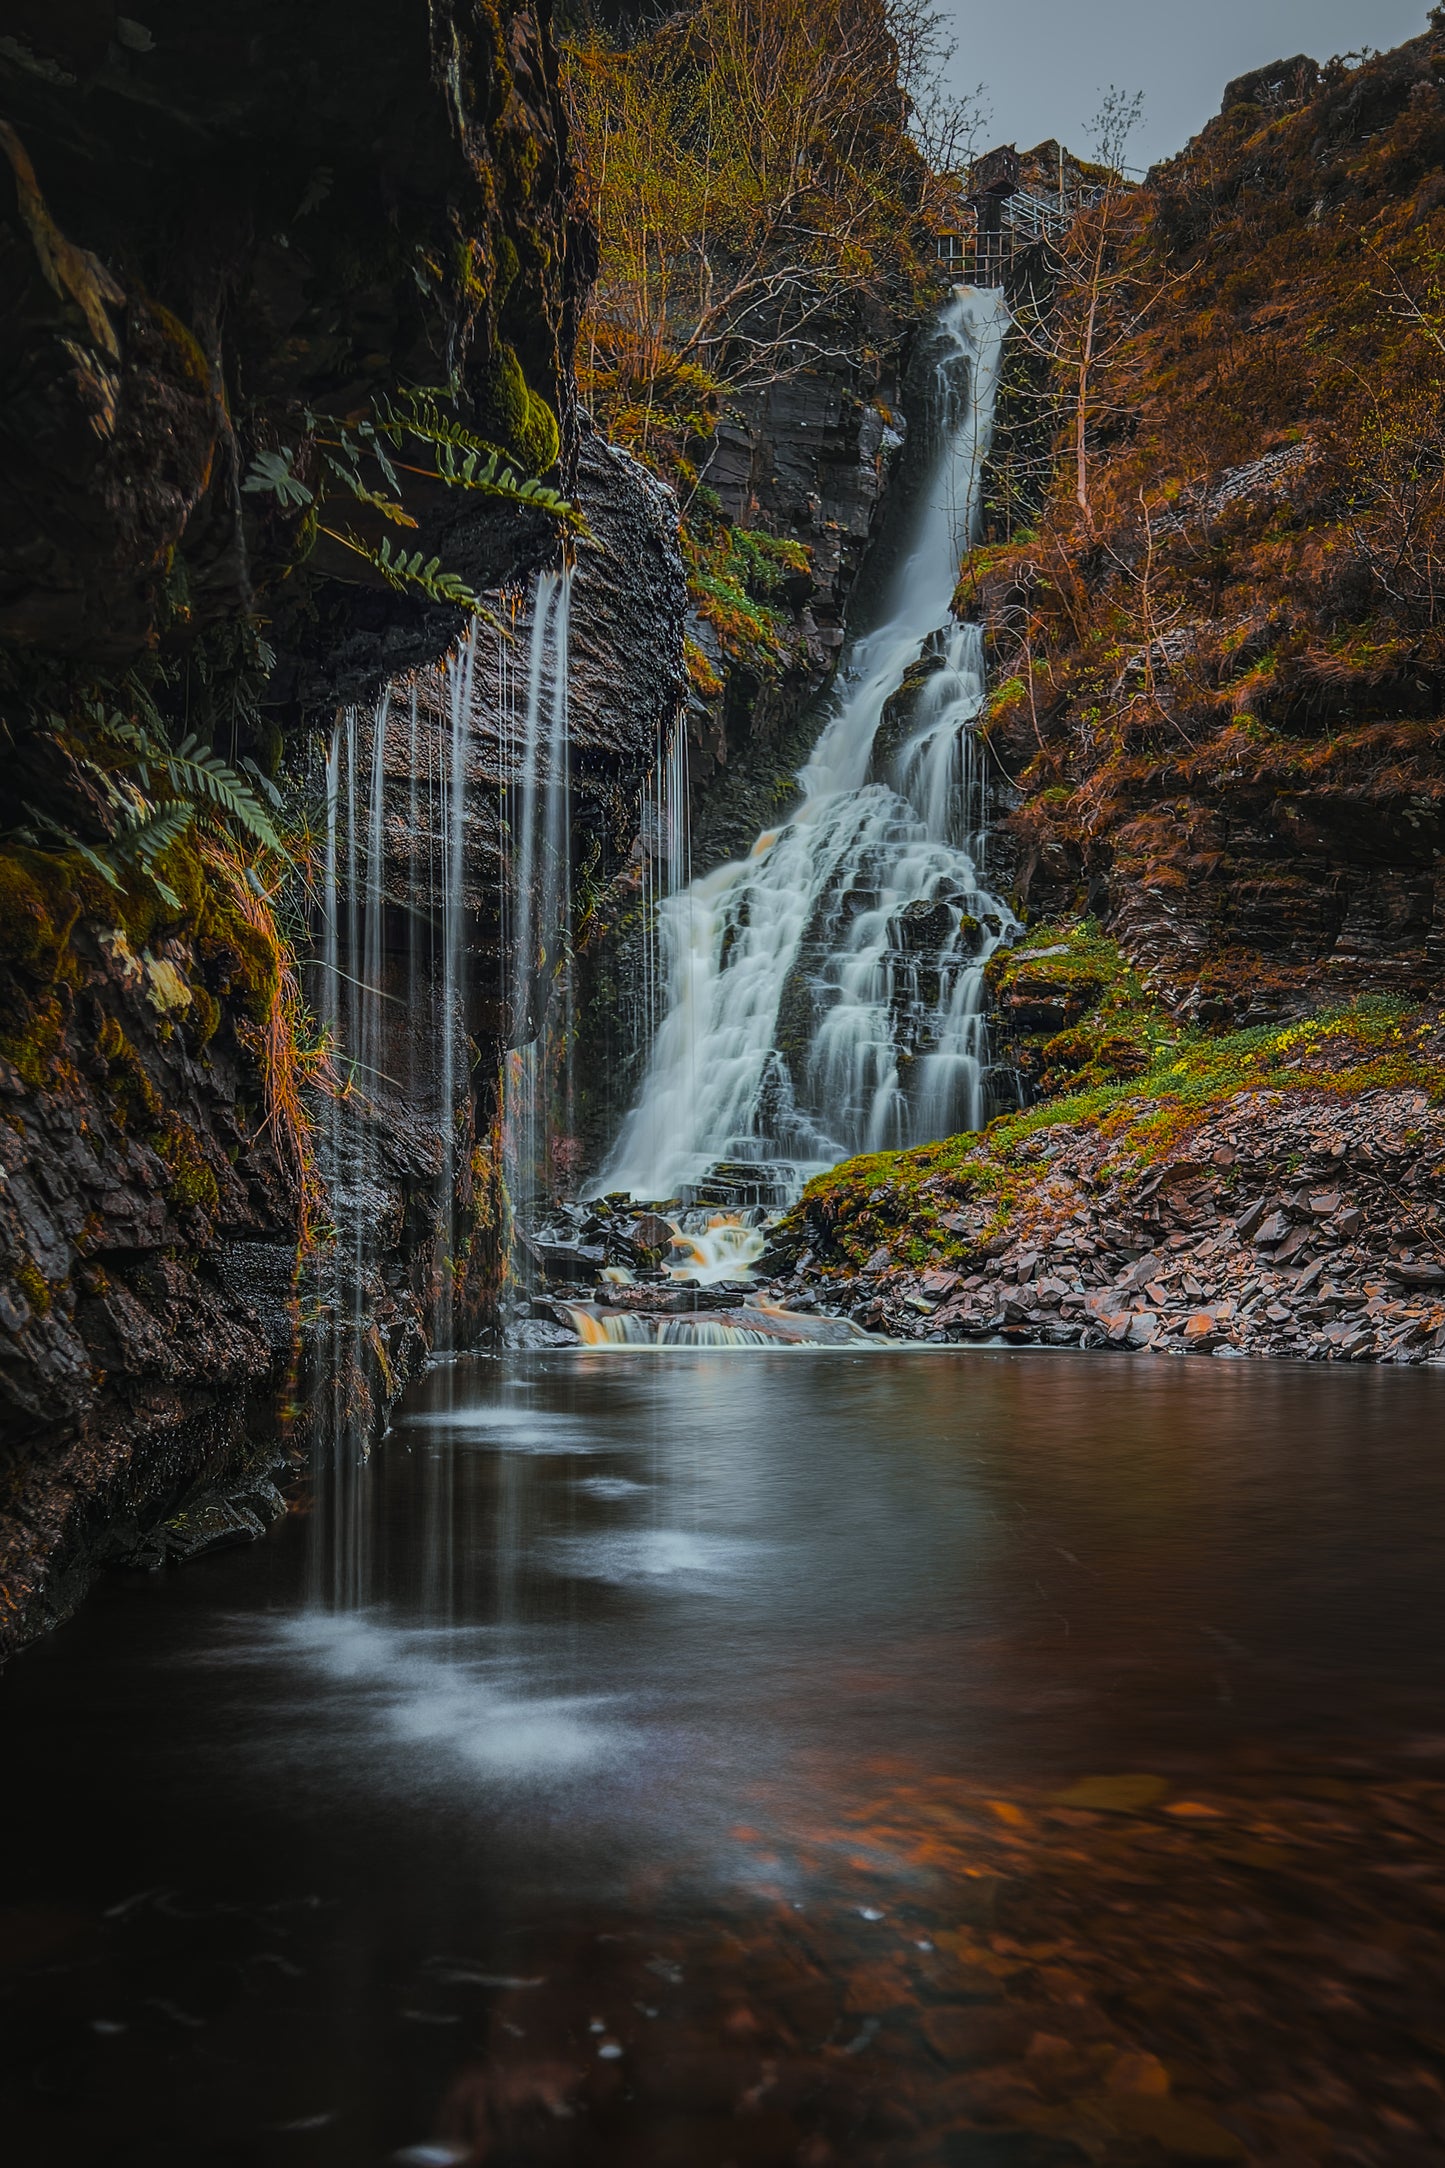 Llyn Aled Waterfall